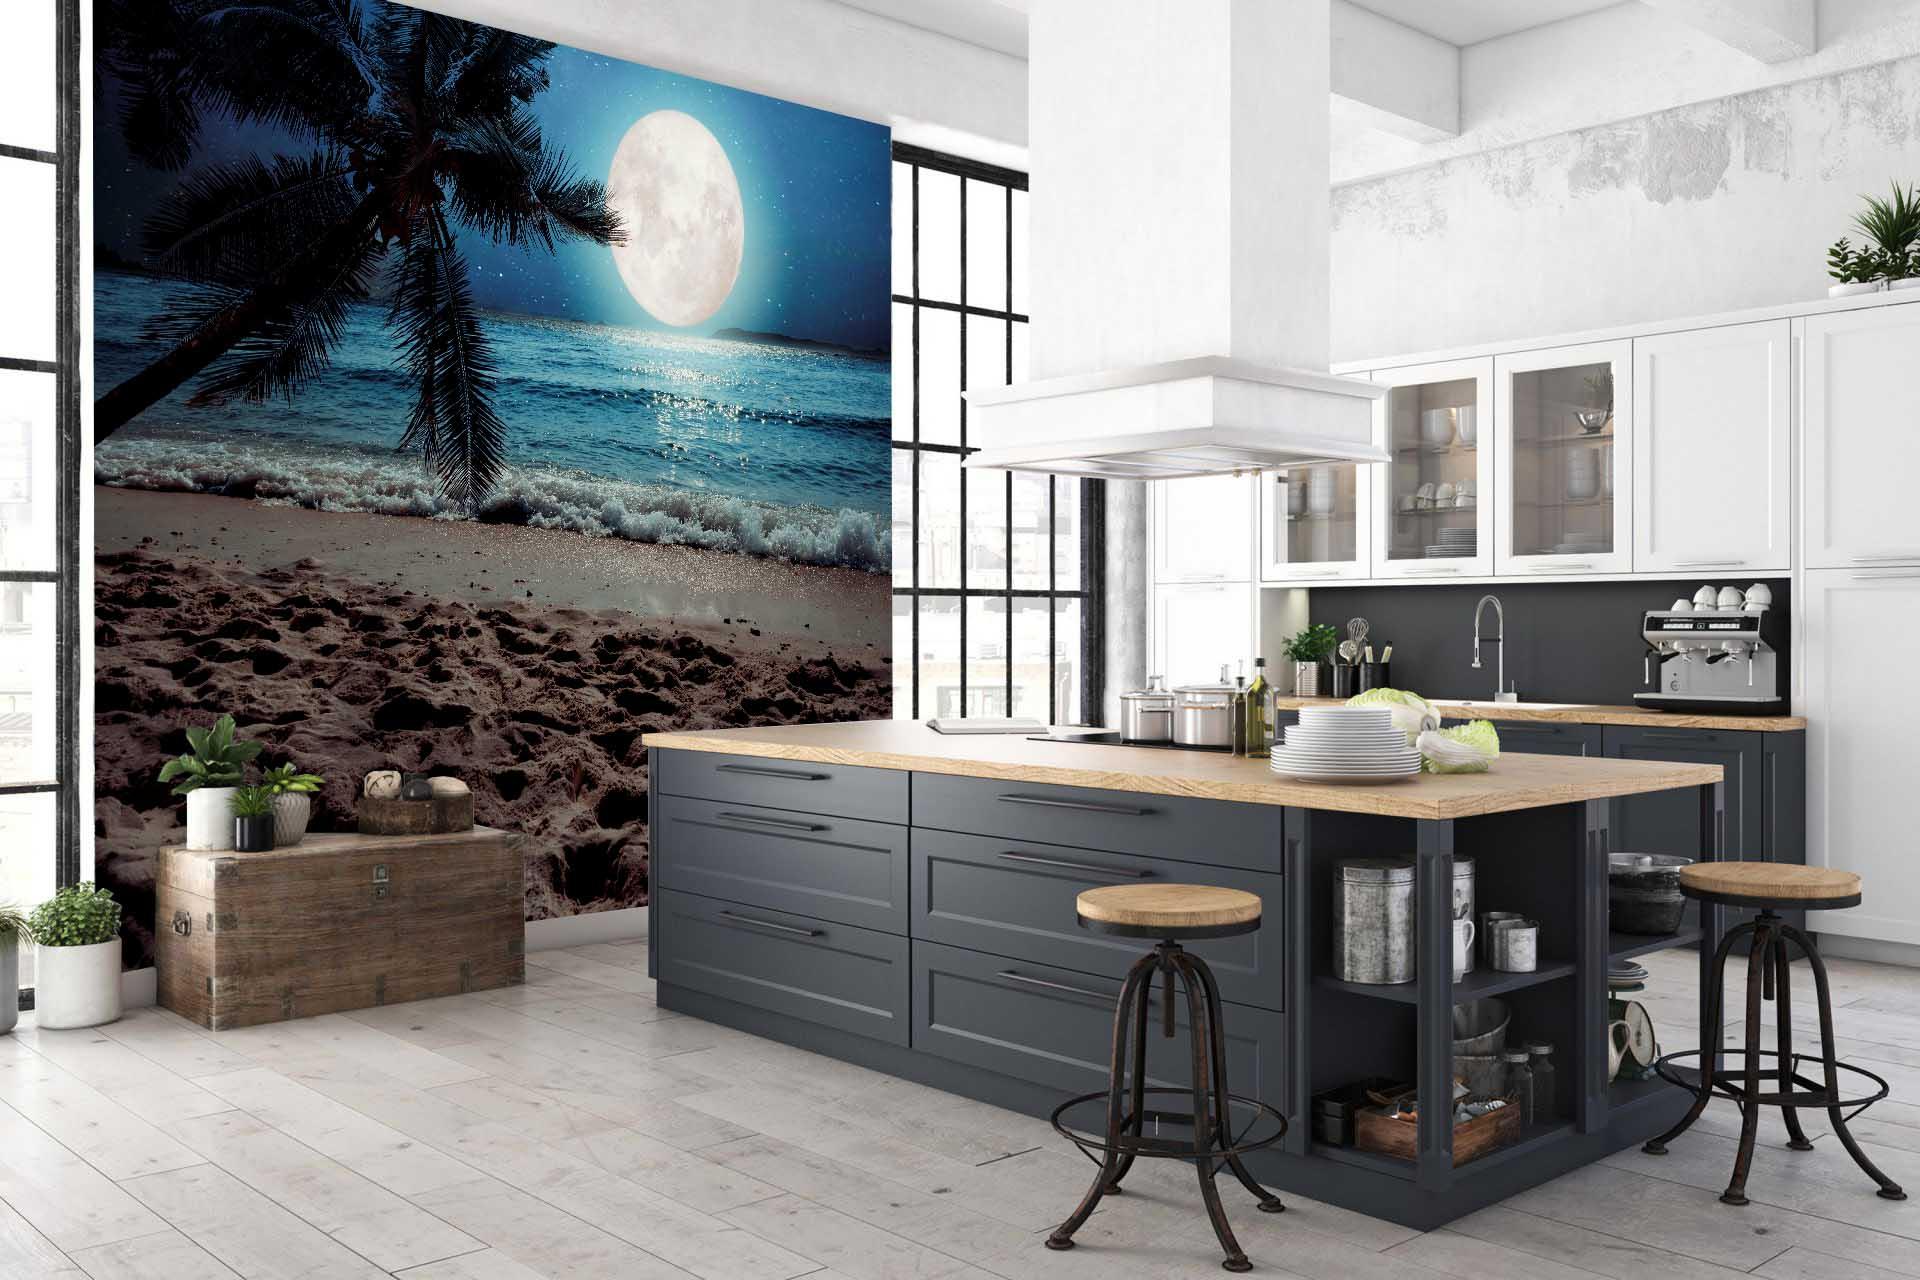 3D Tropical Beach Moon Wall Mural Wallpaper 33- Jess Art Decoration